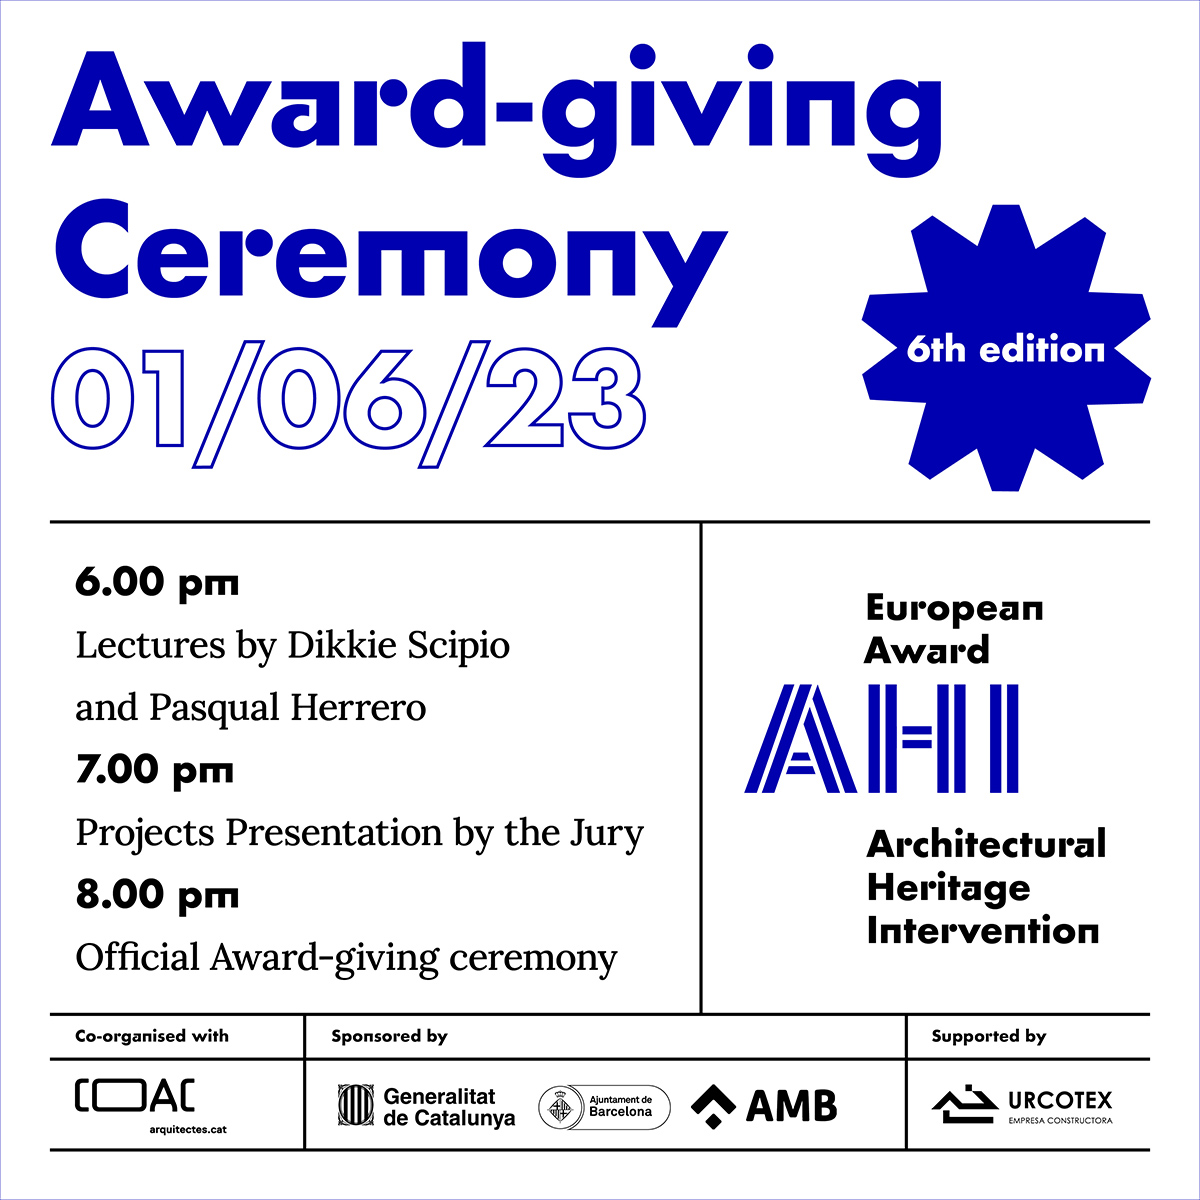 La 6ª edición del Premio Europeo AHI culmina con el acto de entrega de Premios en sus distintas categorías